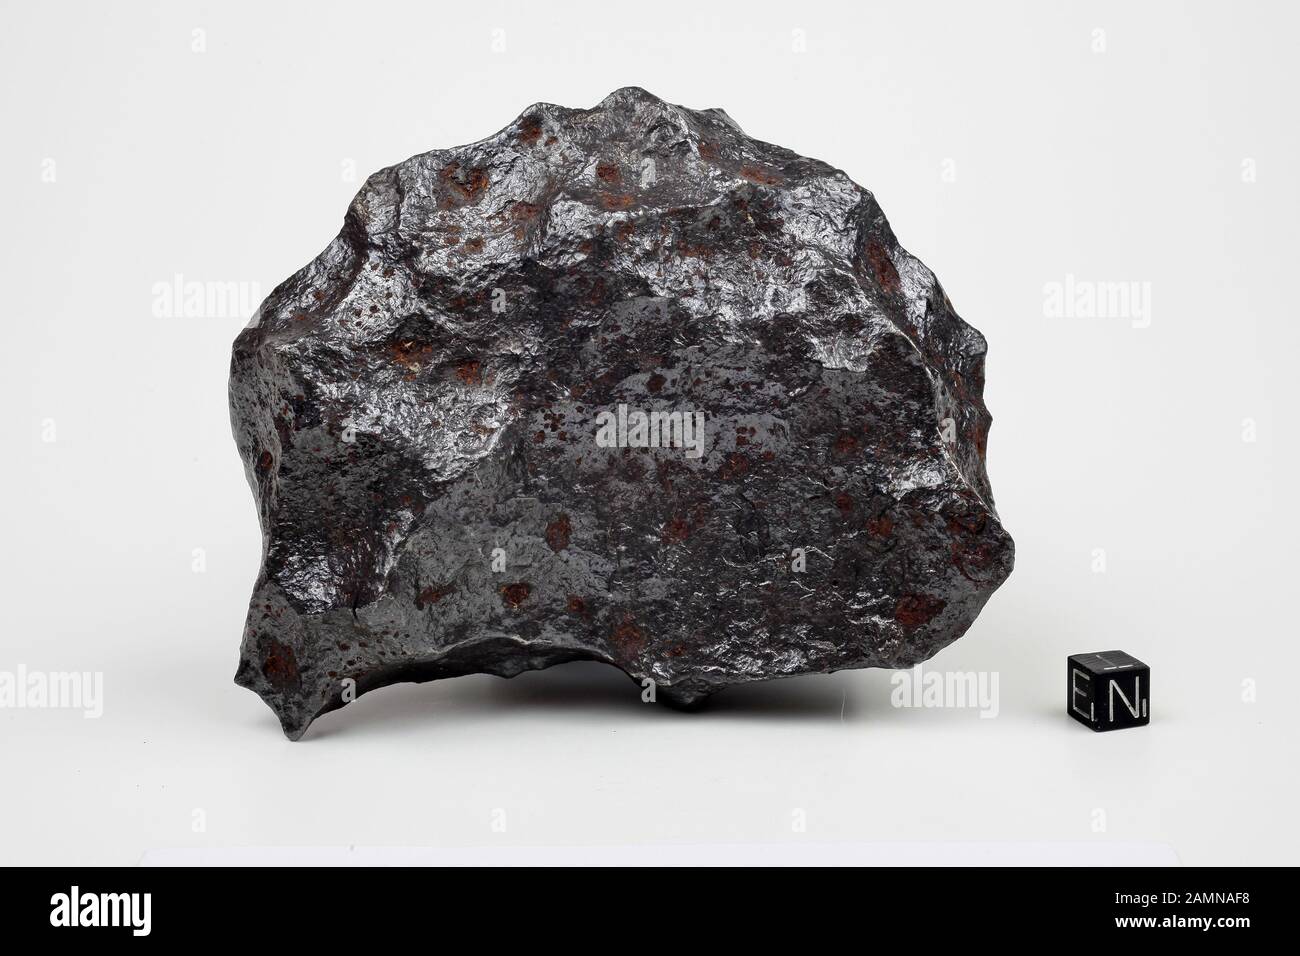 Iron stone. Железокаменный метеорит. Мезосидериты метеориты. Canyon Diablo (метеорит). Железо каменный метеорит.